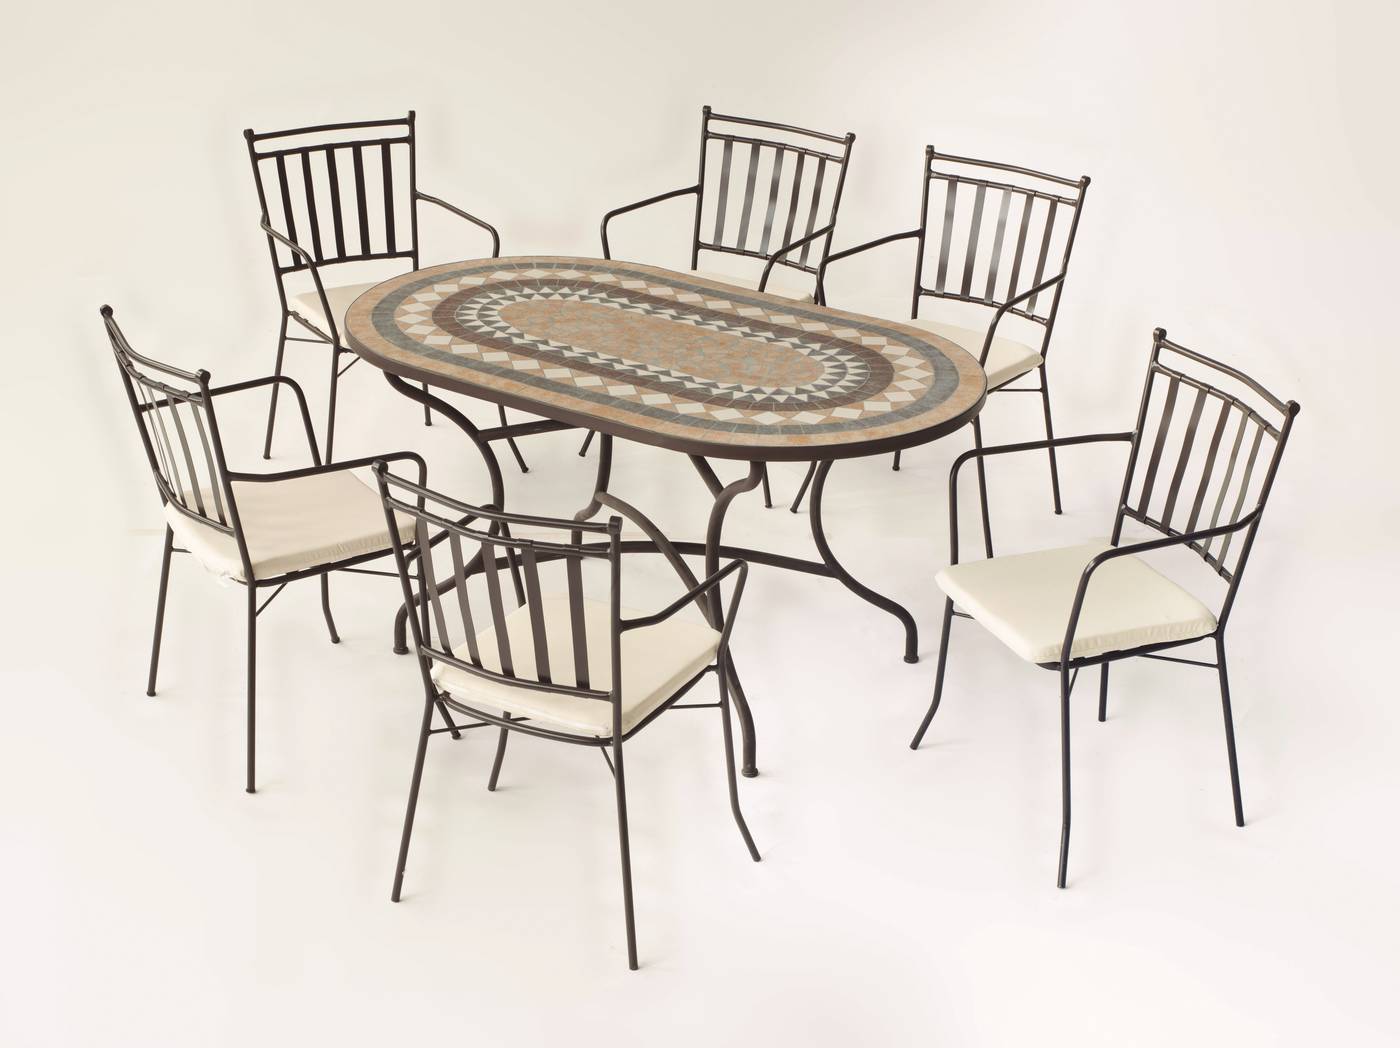 Conjunto de forja color bronce: mesa con tablero ovalado mosaico de 150 cm + 4 sillones con cojines.